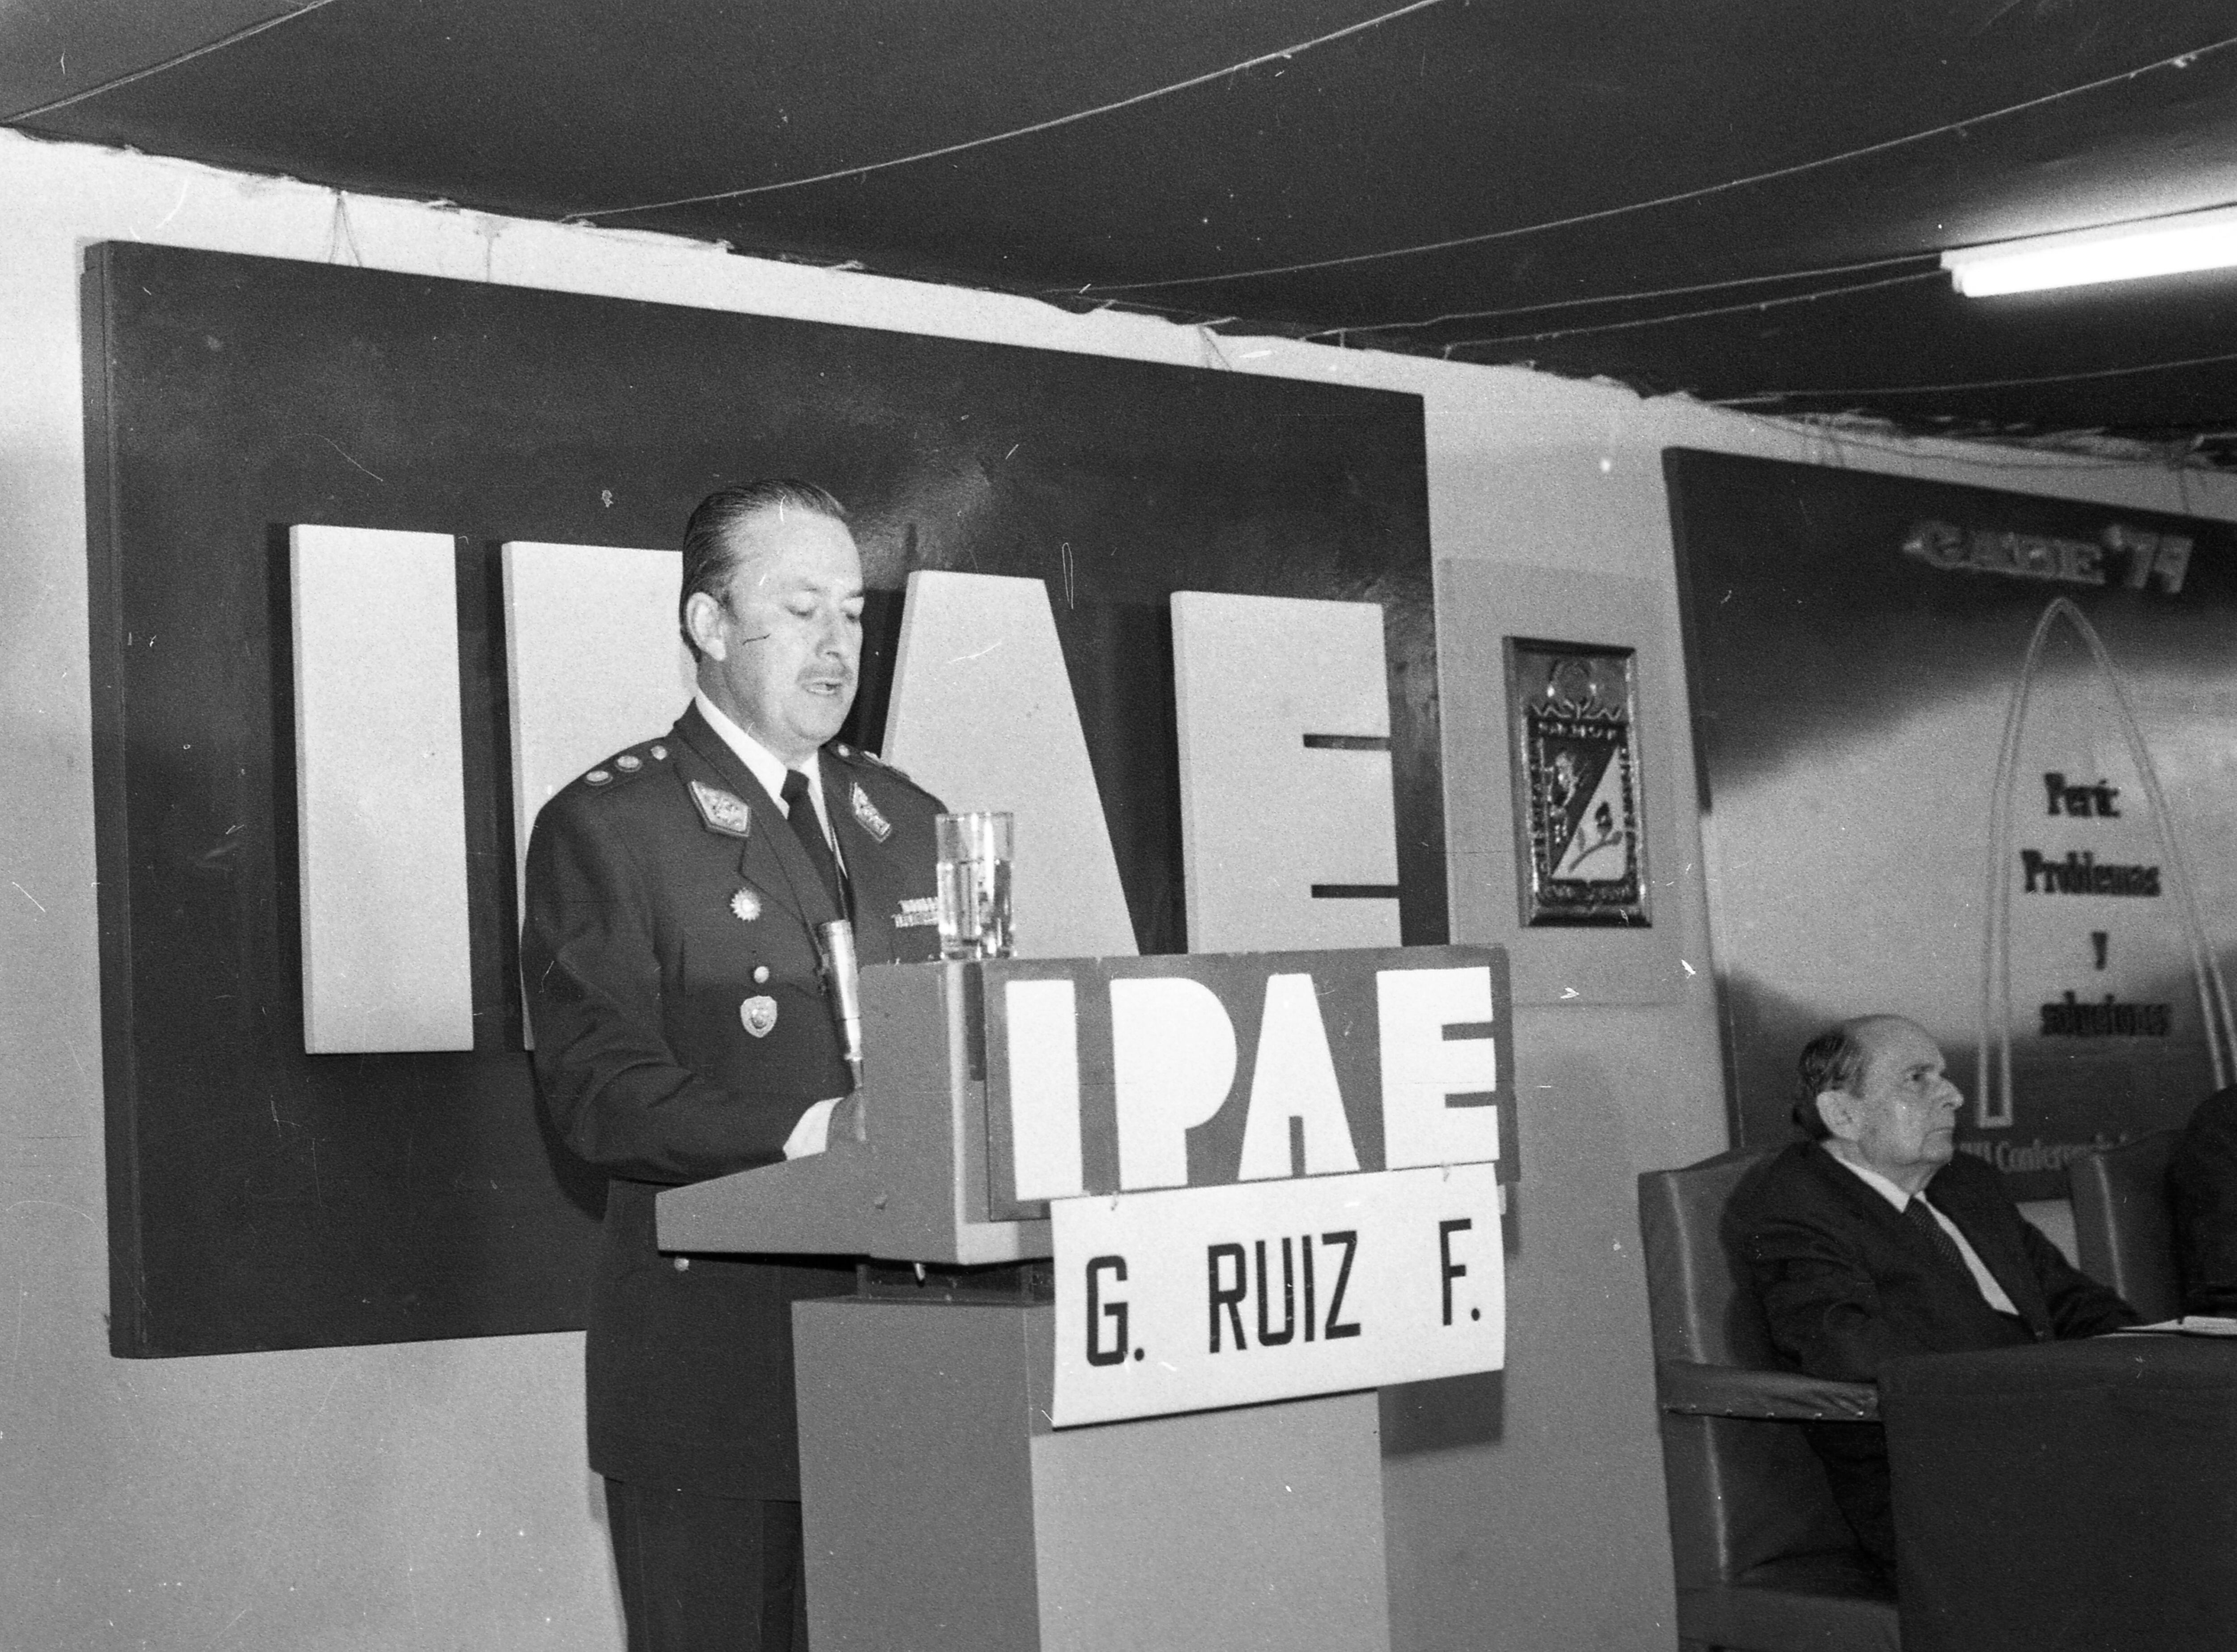 Tacna, 17 de noviembre de 1979. Tomó entonces la palabra, representando al gobierno militar, el general Germán Ruiz Figueroa. (Foto: GEC Archivo Histórico / Darío Médico).

